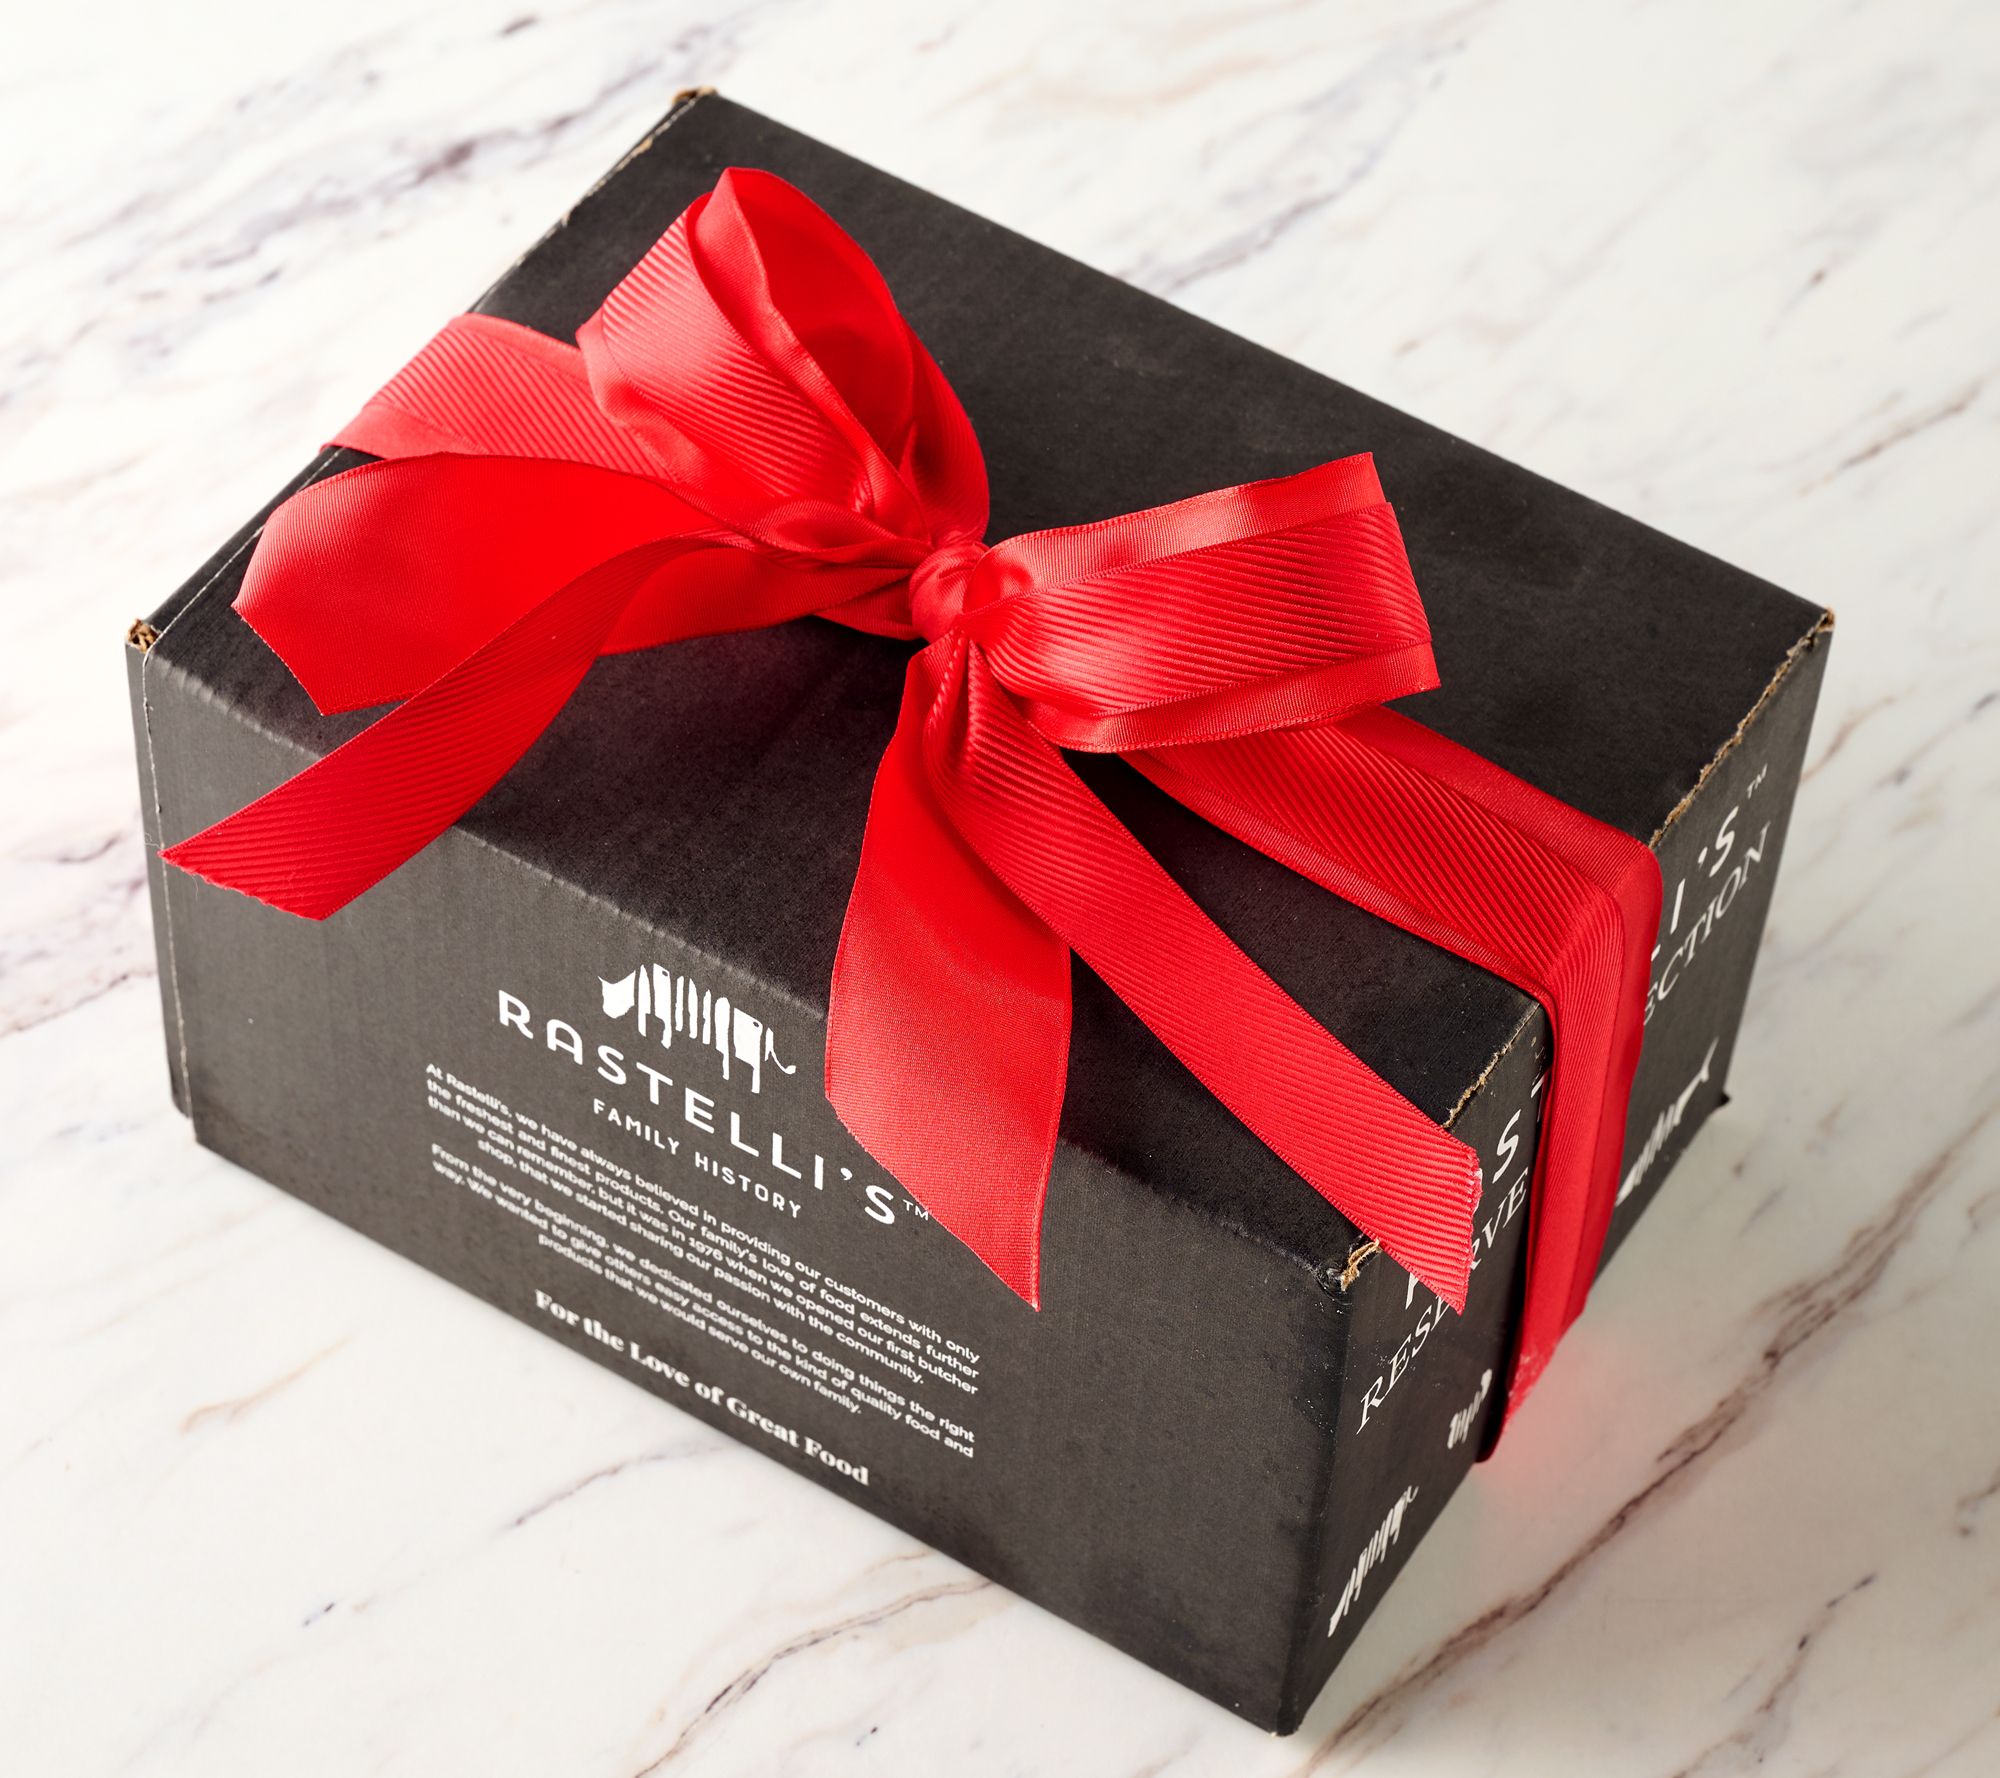 Filet Mignon Signature Gift Box (5 oz.), Online Butcher Shop